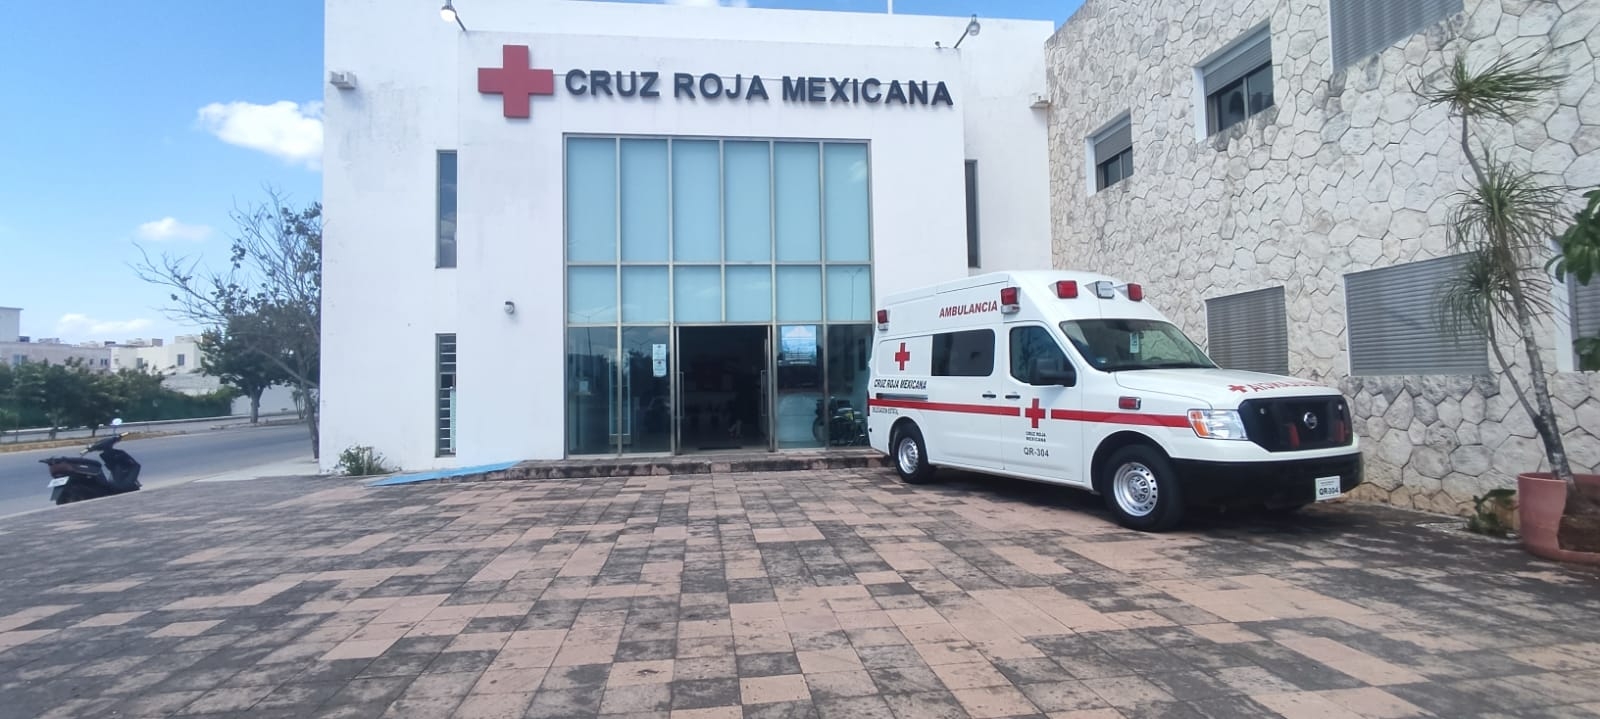 Los extrabajadores aseguran que ninguno de los paramédicos de la Cruz Roja en Playa del Carmen están certificados